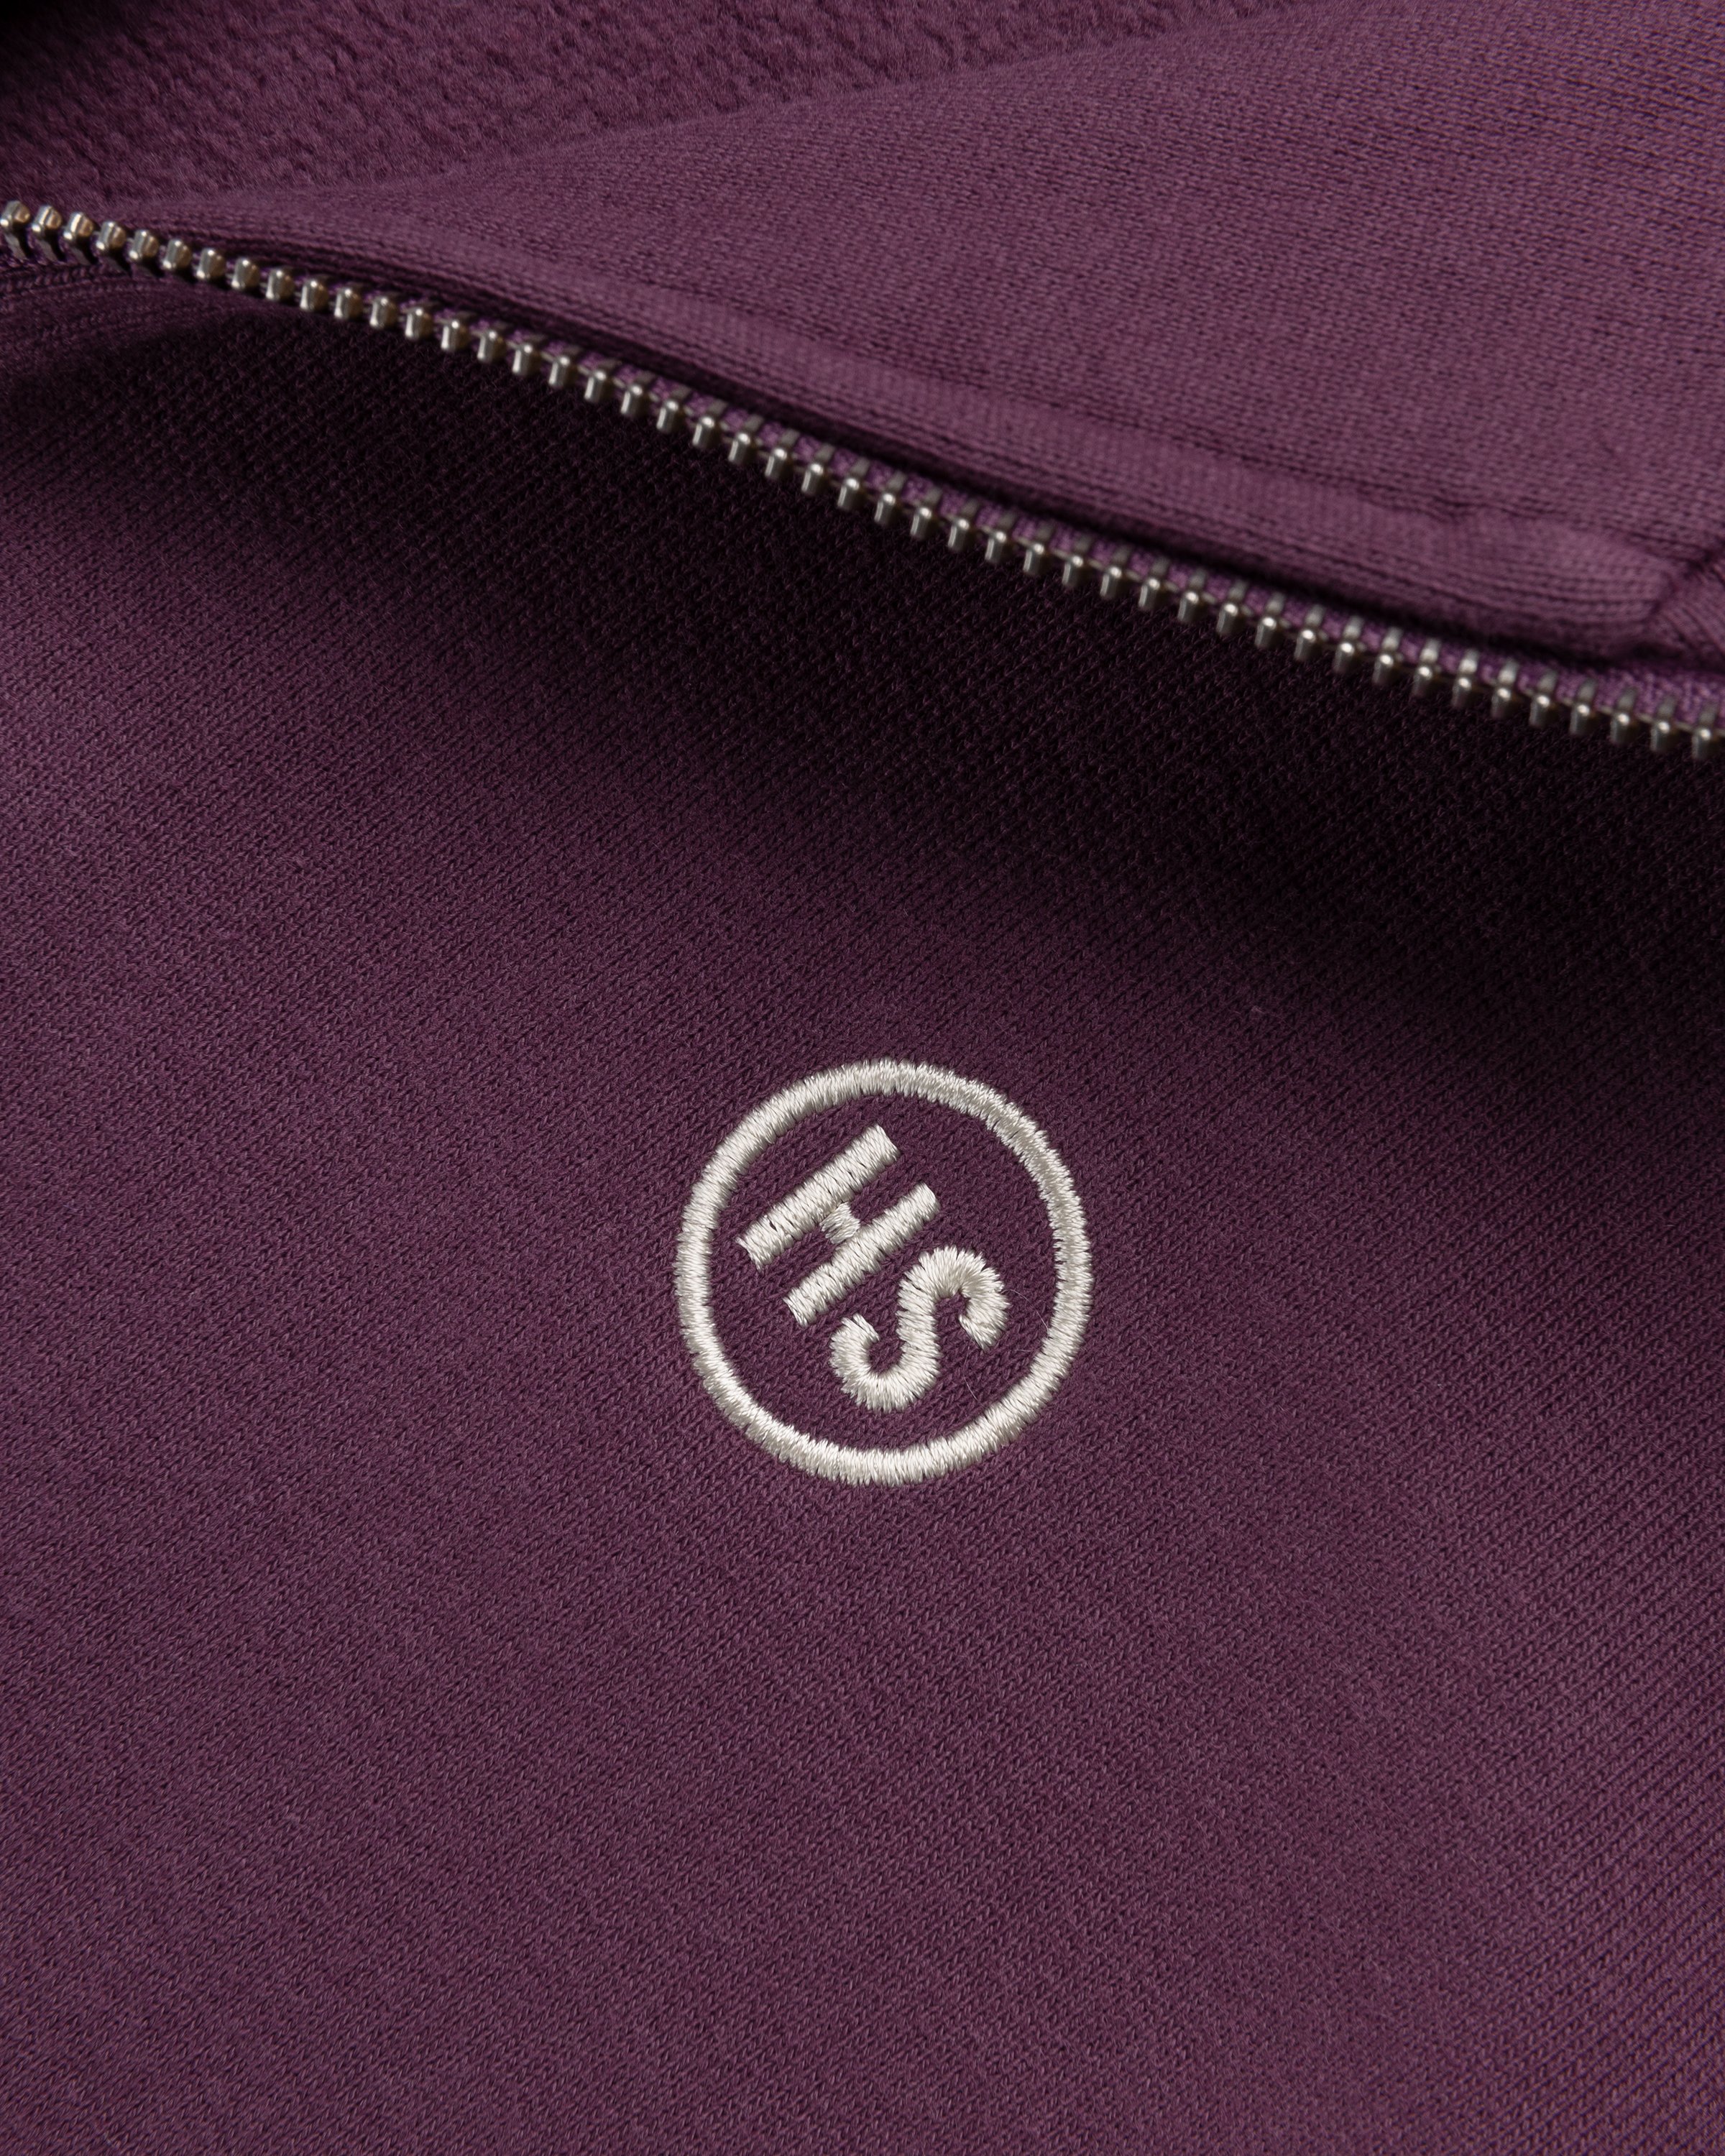 BEINGHUNTED x Highsnobiety - BERLIN, BERLIN 3 Zip Mock Neck Purple - Clothing - Purple - Image 4